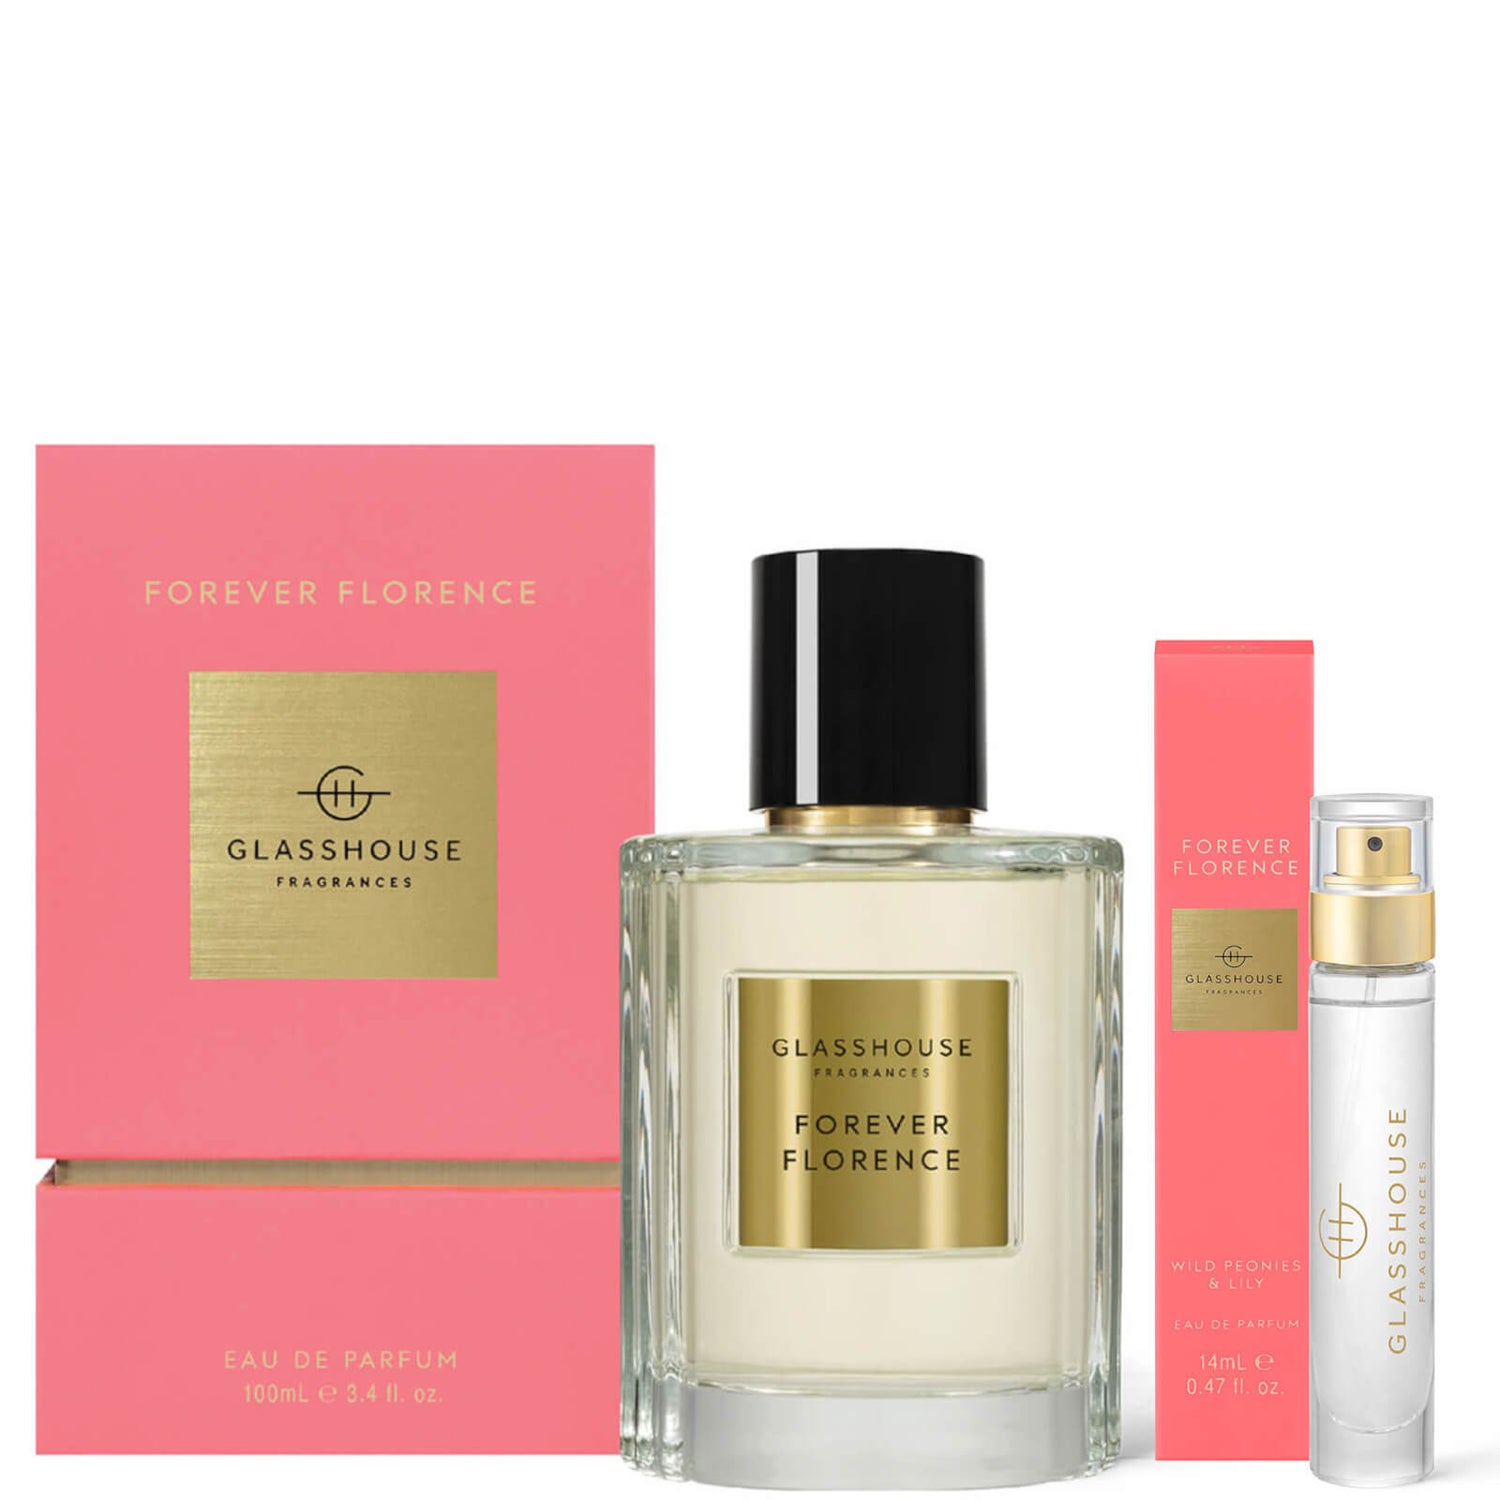 Glasshouse Fragrances Forever Florence Eau de Parfum Travel Set